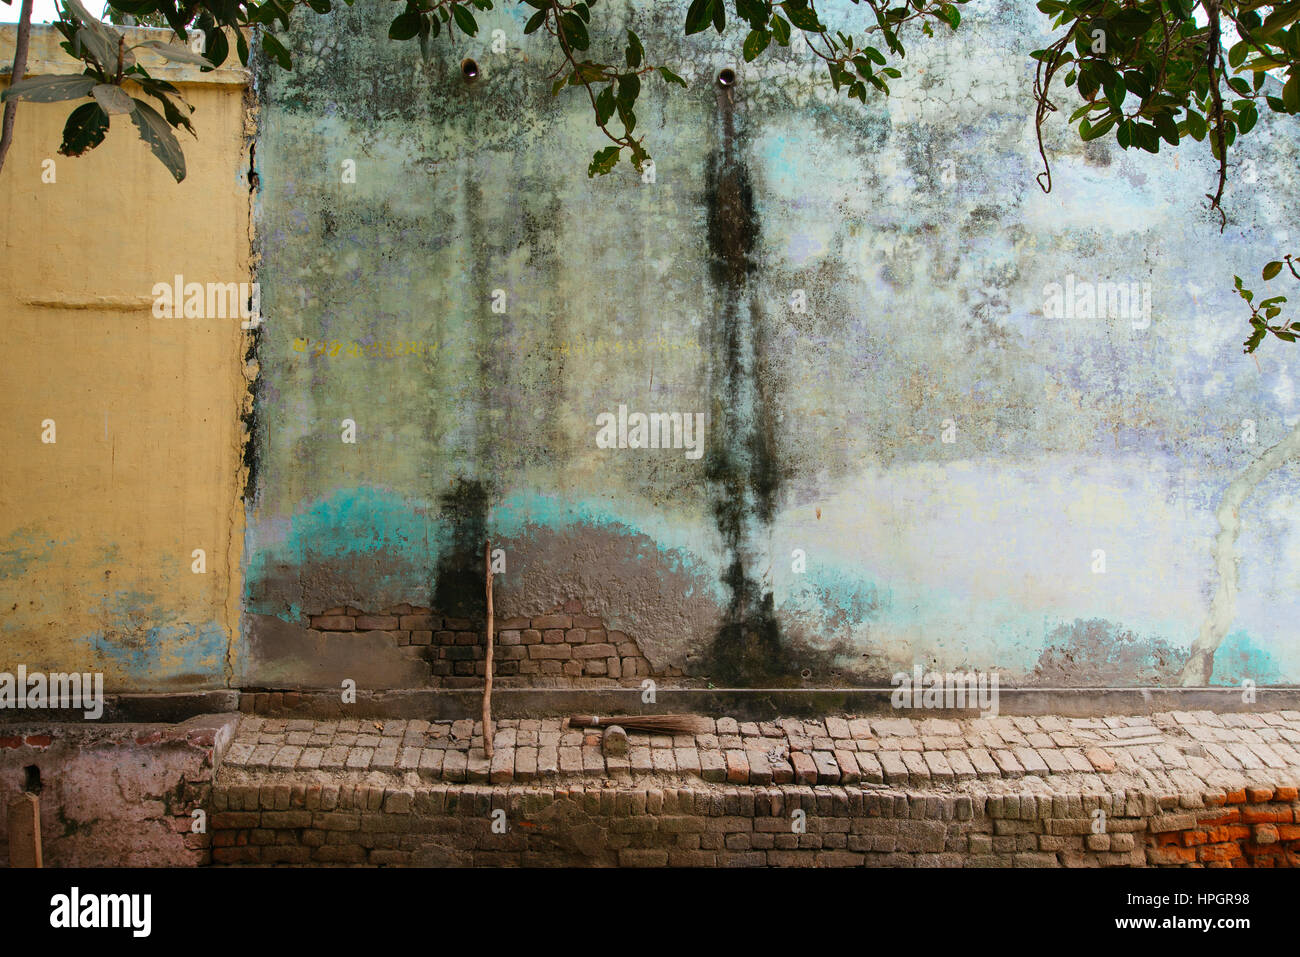 Dorf an der Wand der blauen Farbe verblassen, Indien. Stockfoto